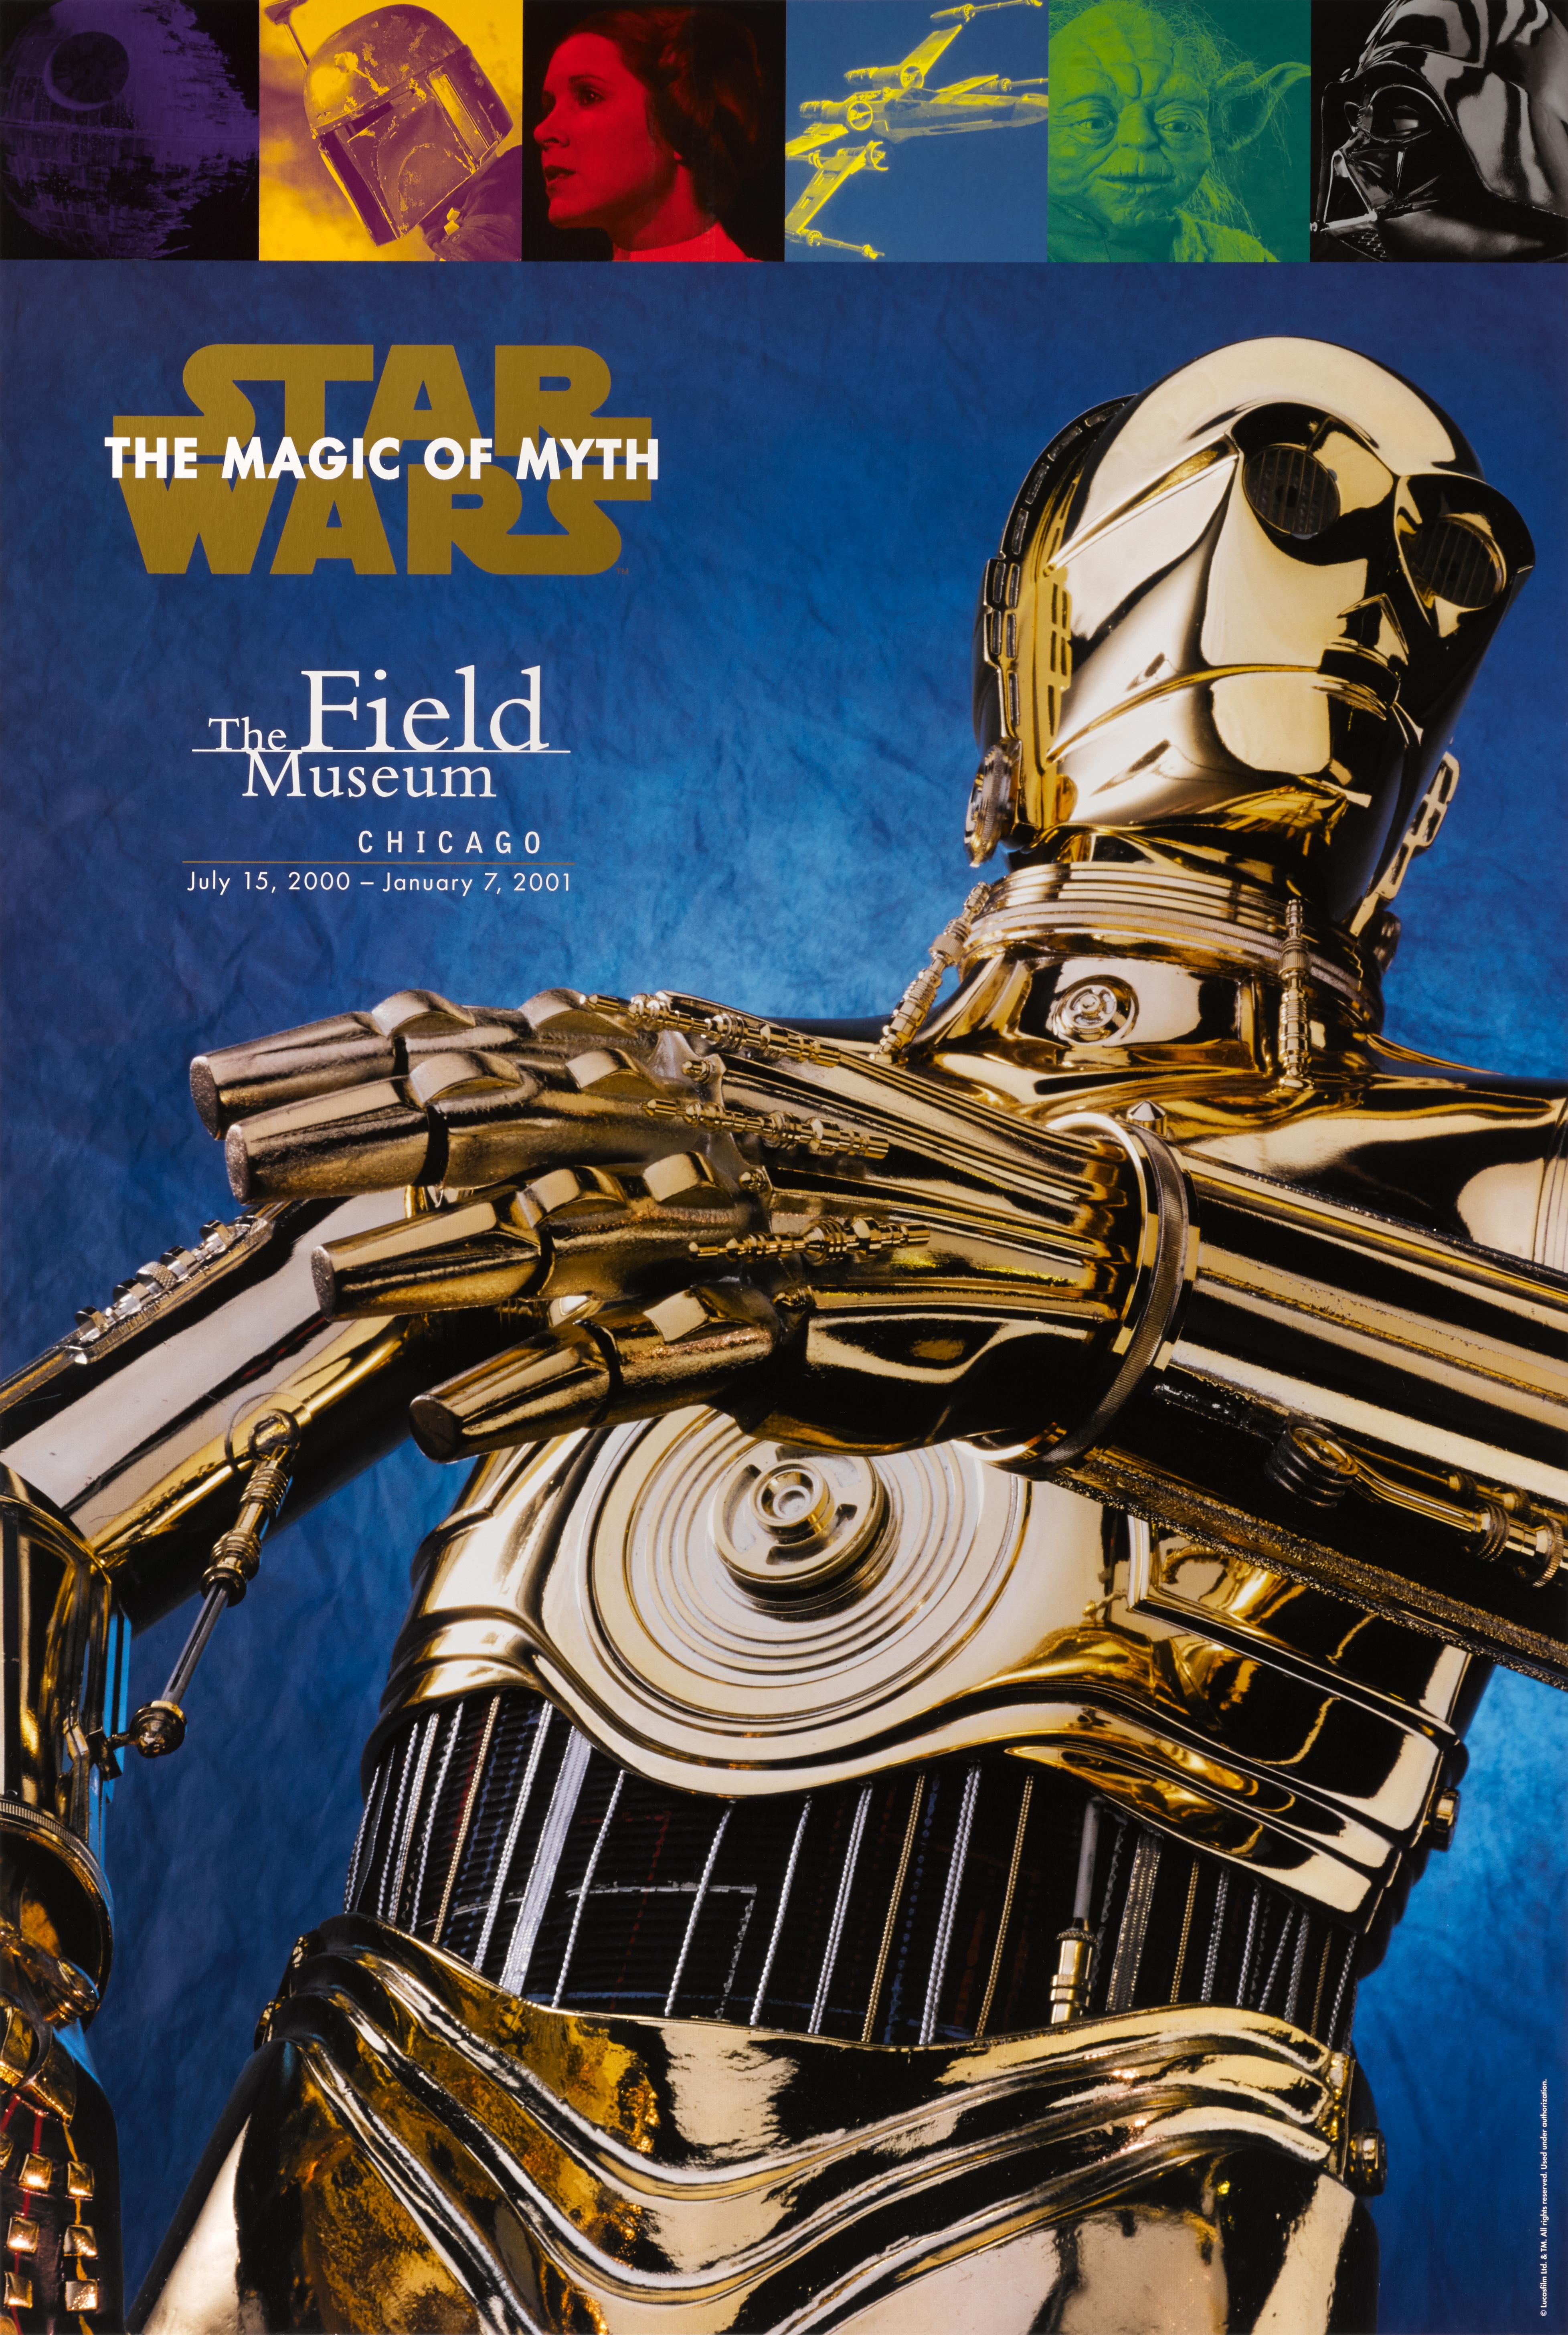 Amerikanisches Originalplakat für die Ausstellung Star Wars: The Magic of Myth, die vom 15. Juli 2000 bis zum 7. Januar 2001 im The Field Museum in Chicago stattfand.
Dieses Plakat ist Erhaltung Leinen zurück und ungefaltet wäre es in einem starken